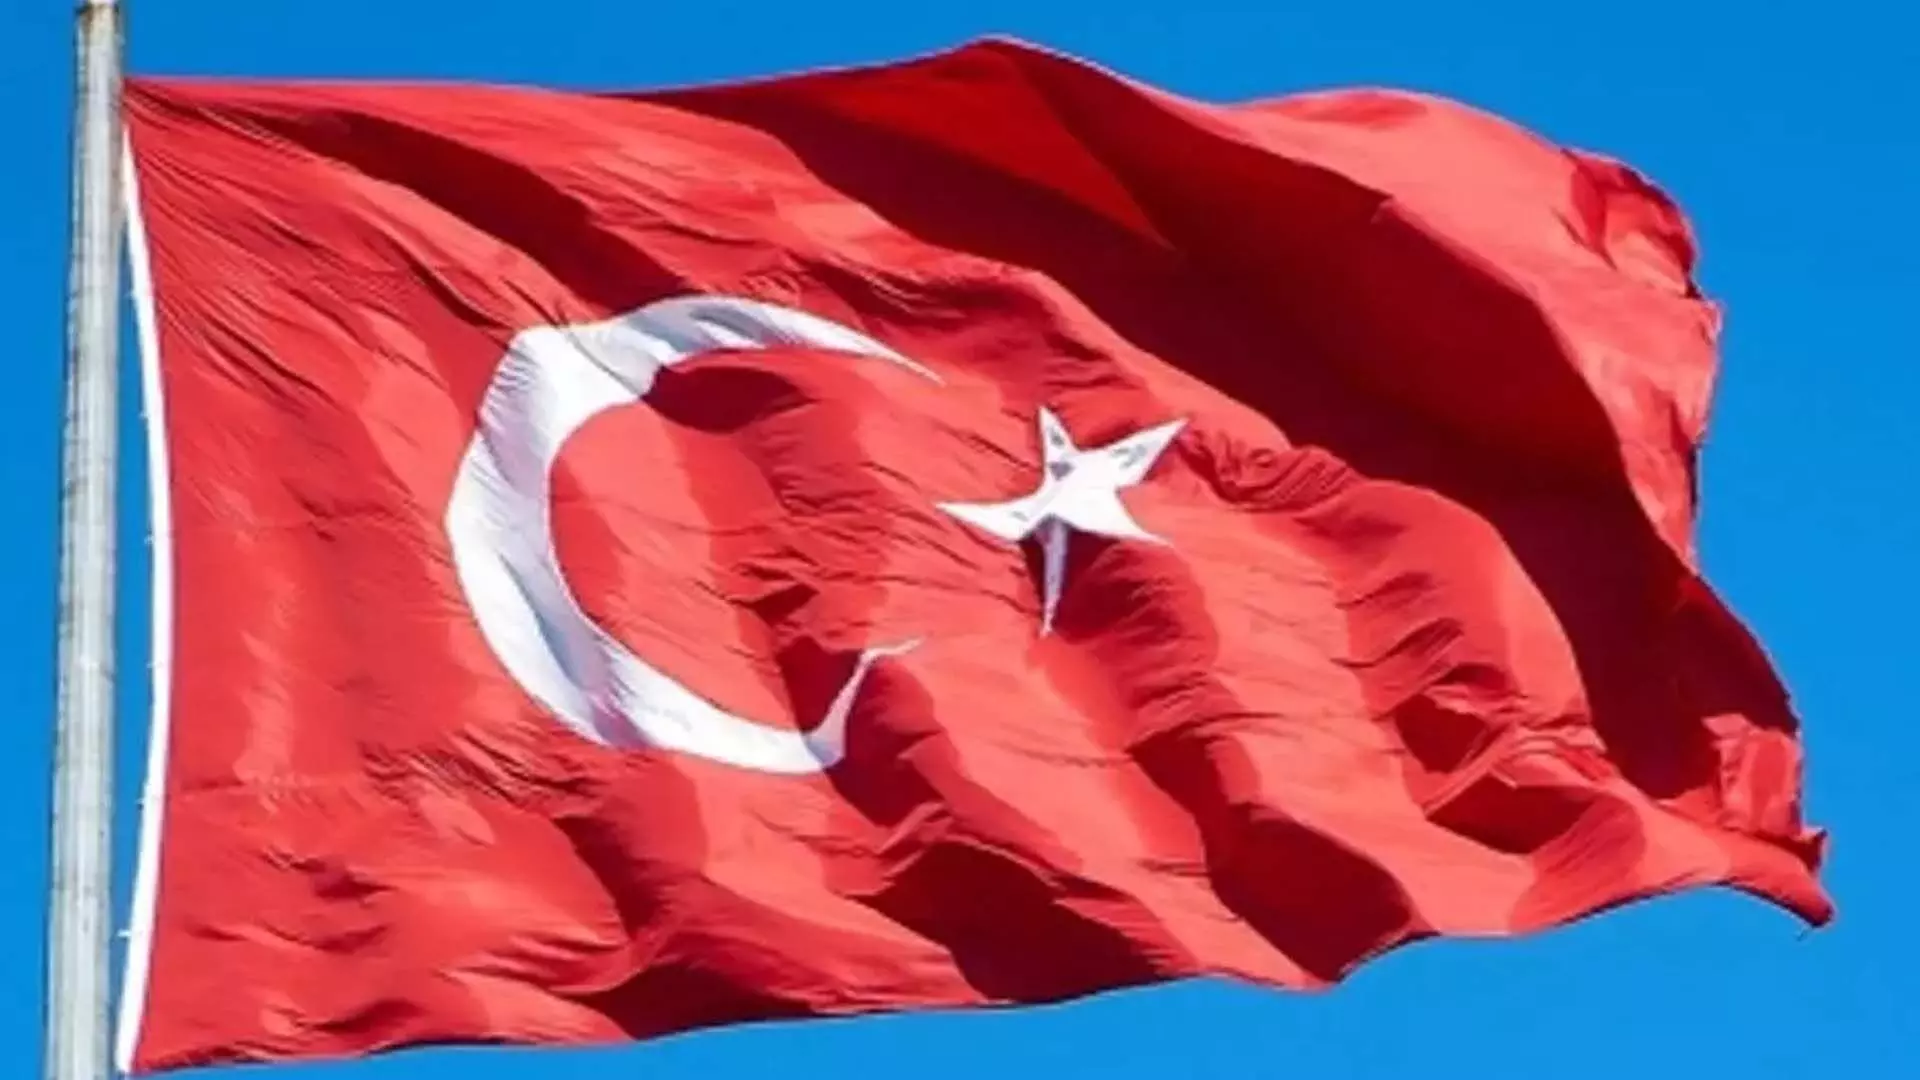 विपक्ष की आलोचना के बावजूद तुर्की विदेशी प्रभाव कानून पर विचार कर रहा